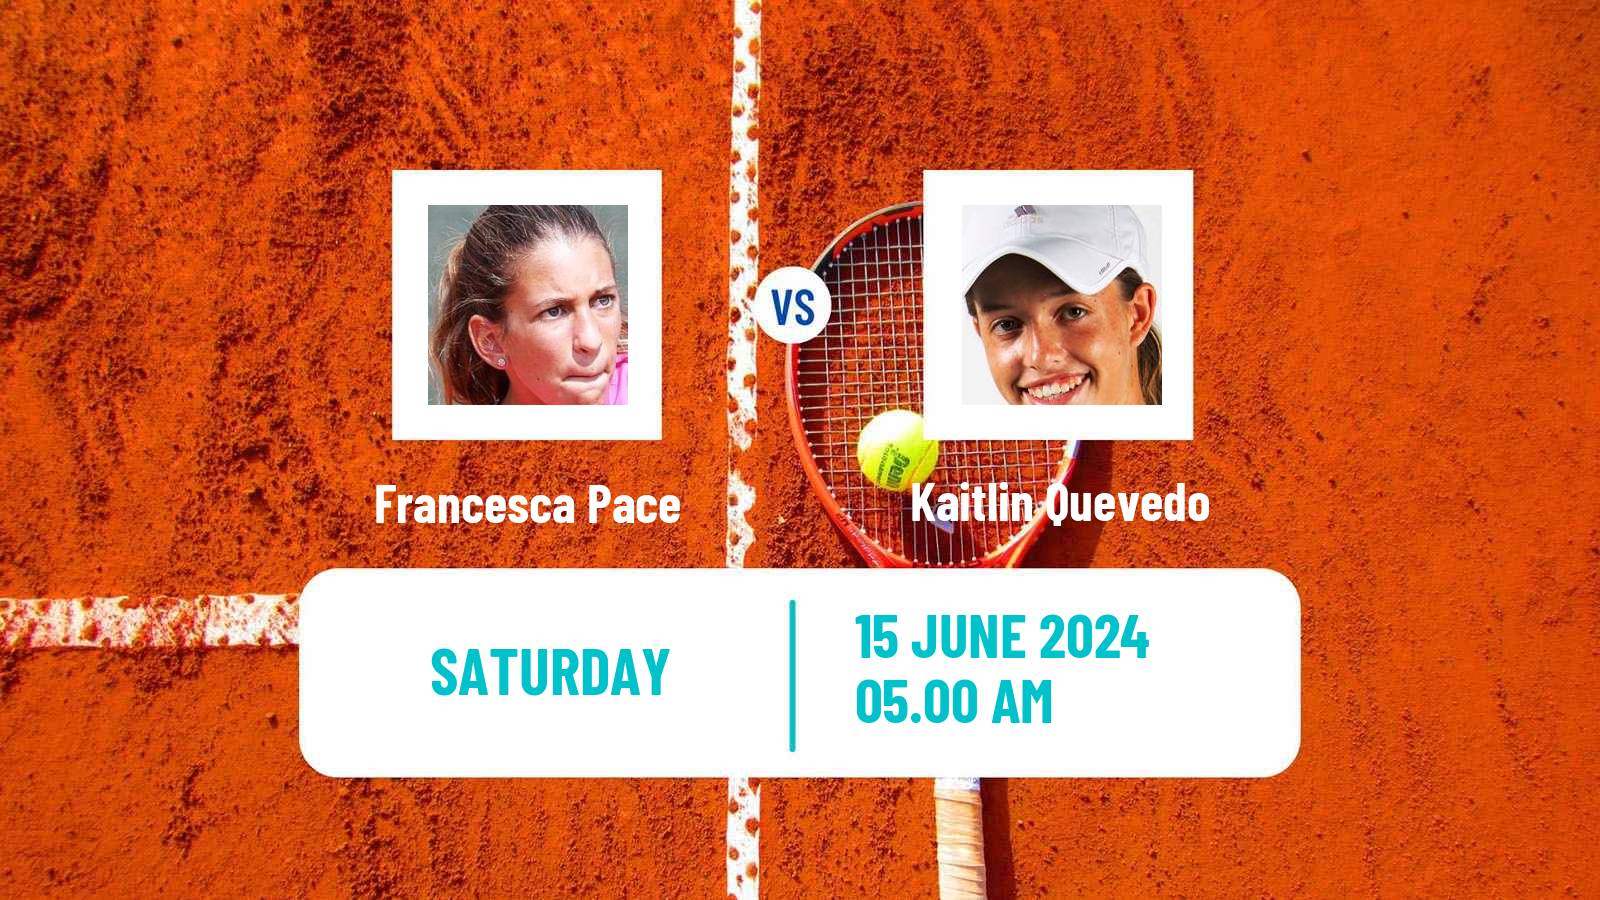 Tennis ITF W15 Madrid 2 Women Francesca Pace - Kaitlin Quevedo